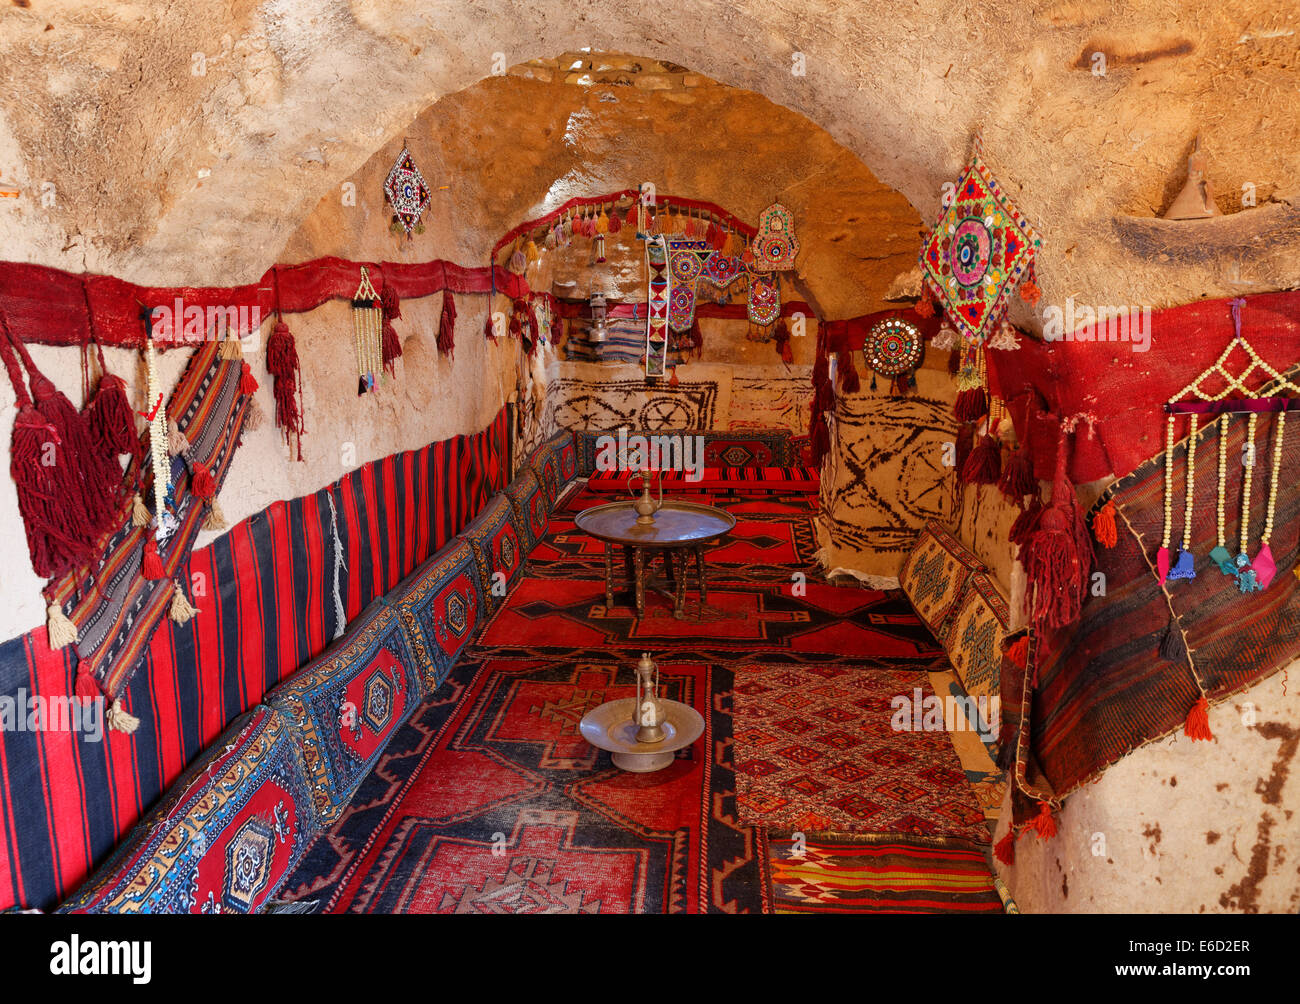 Intérieur d'un trullo-maison de terre, Harran, Şanlıurfa Province, Région de l'Anatolie du sud-est, l'Anatolie, Turquie Banque D'Images